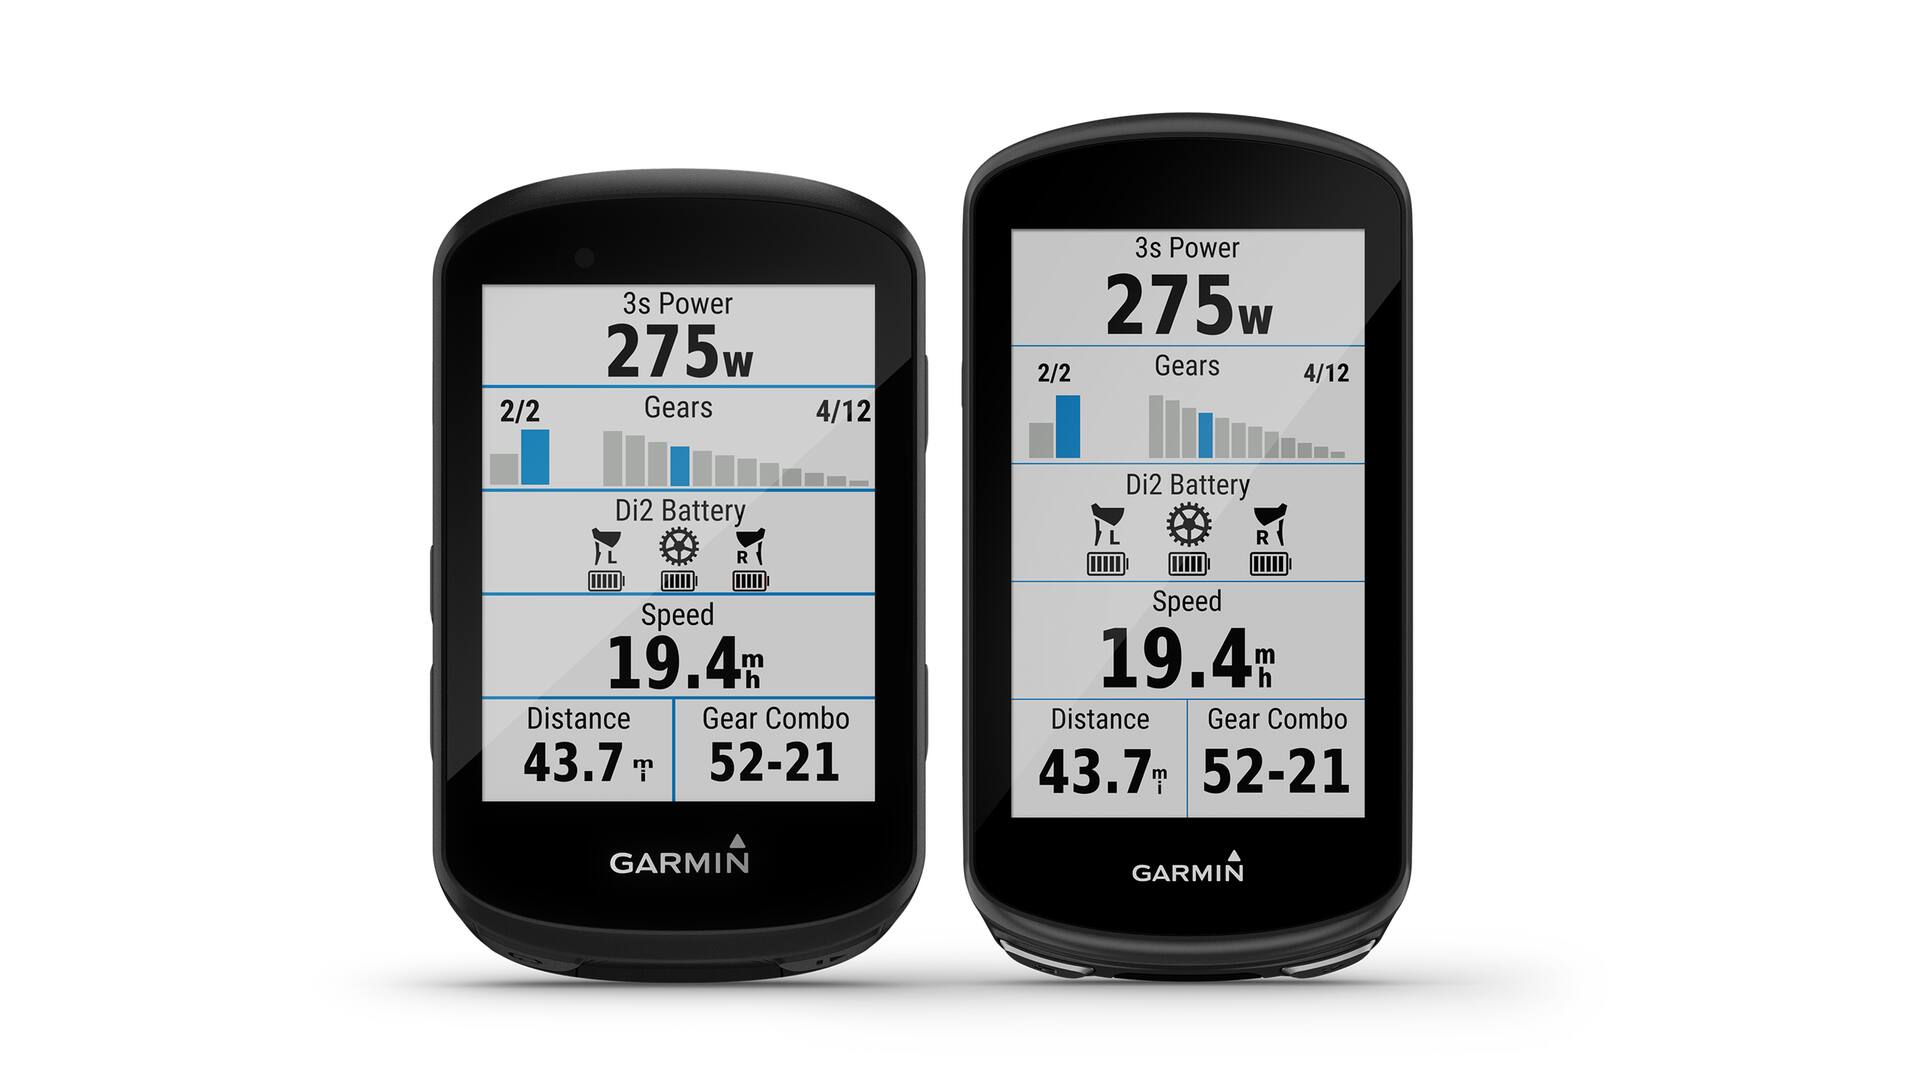 Fahrrad-Navi: Welche Apps gibt es & welche ist die Beste?